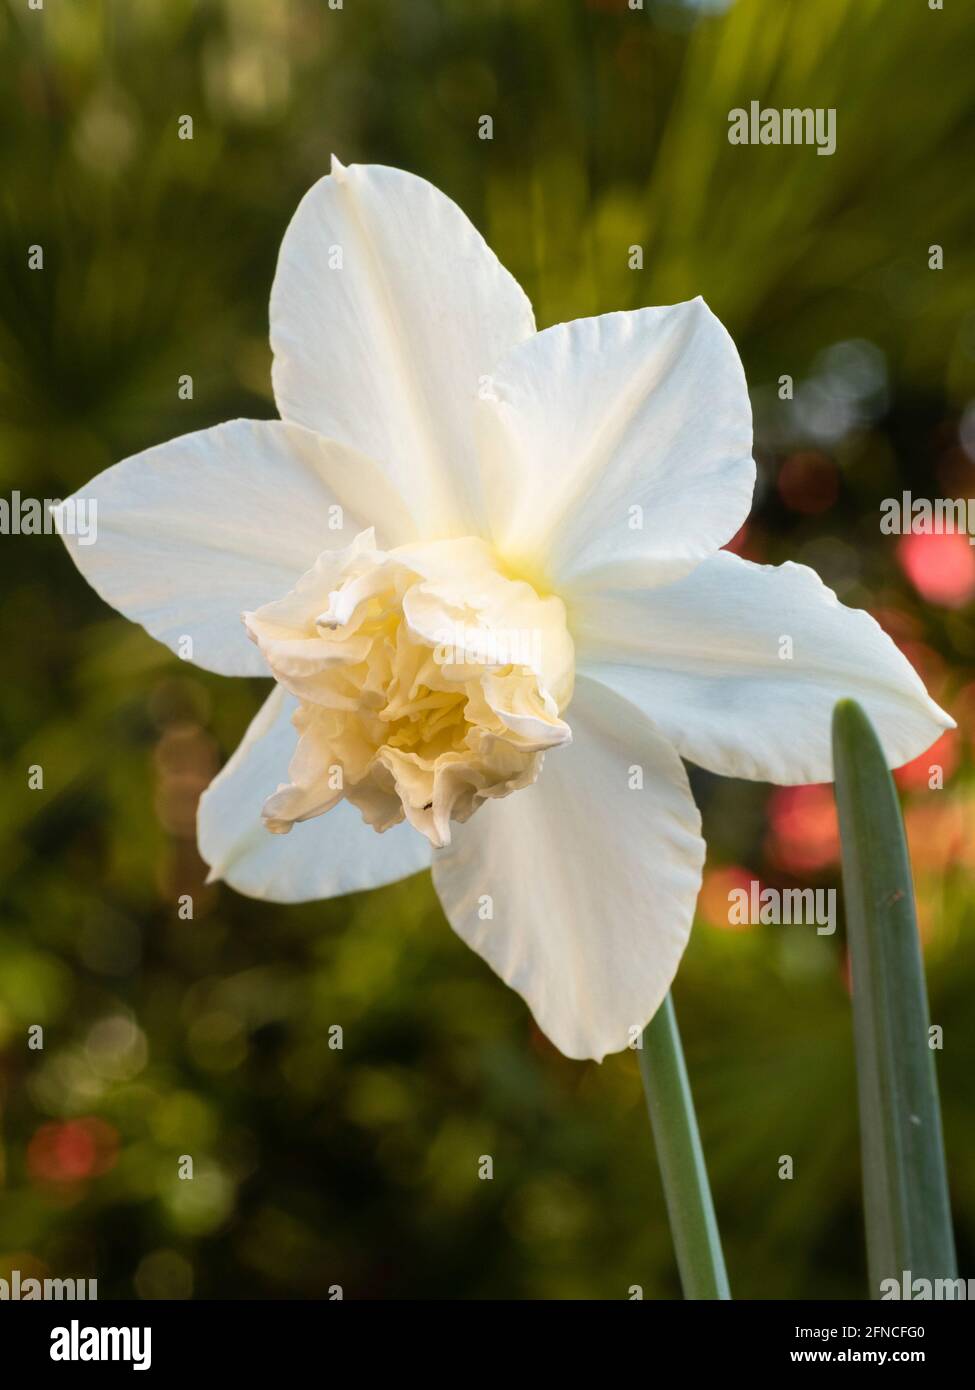 Double couronne et tepals blancs du daffodil de type triandrus, Narcissus 'White Marvel' Banque D'Images